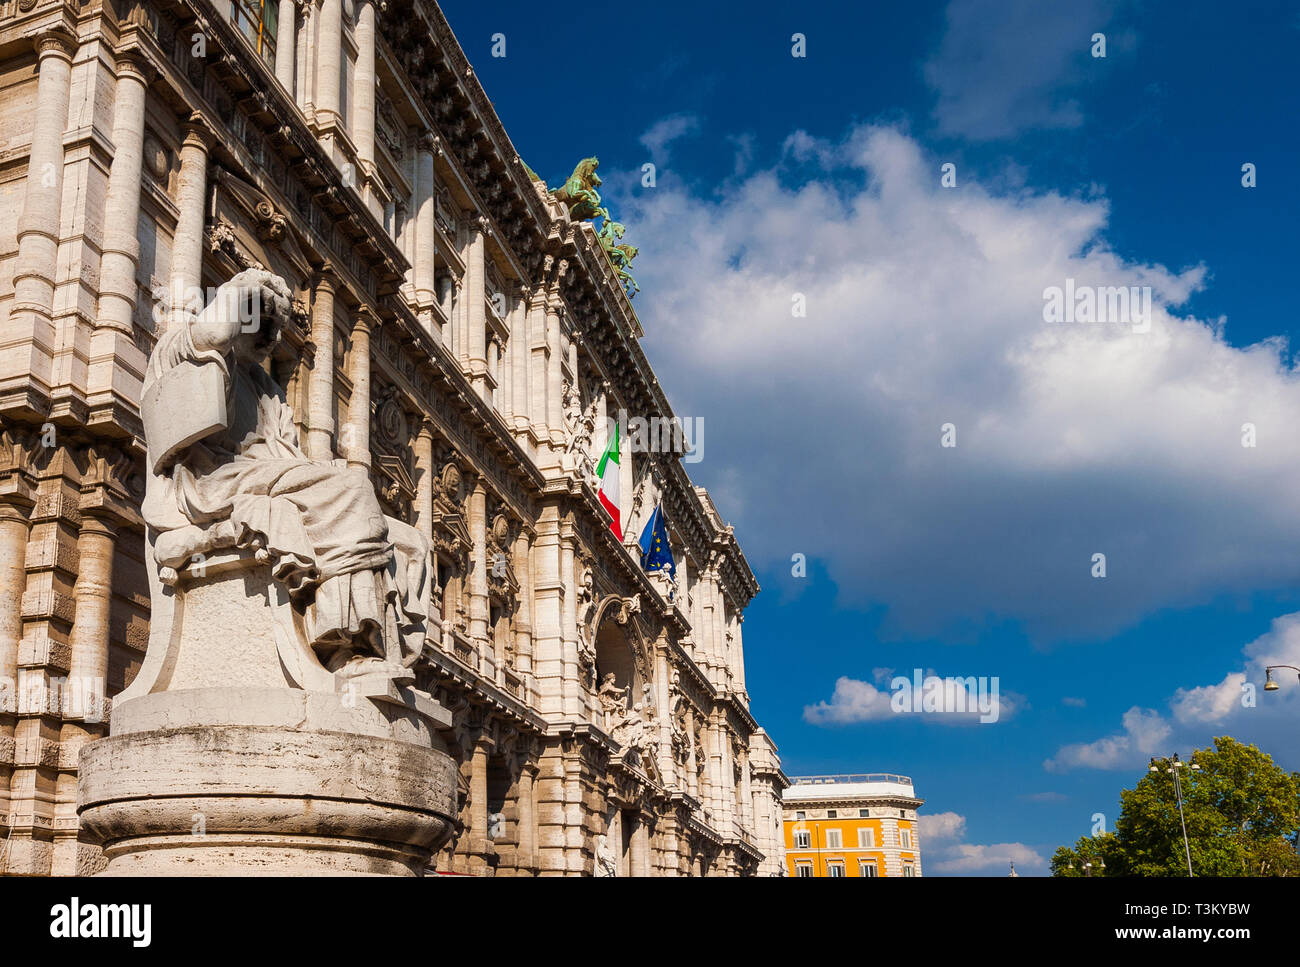 Antiguo palacio de justicia de Roma con su pesada y fachada barroca, también conocido como "Palacio Palazzaccio" (malo), un hito de la ciudad Foto de stock